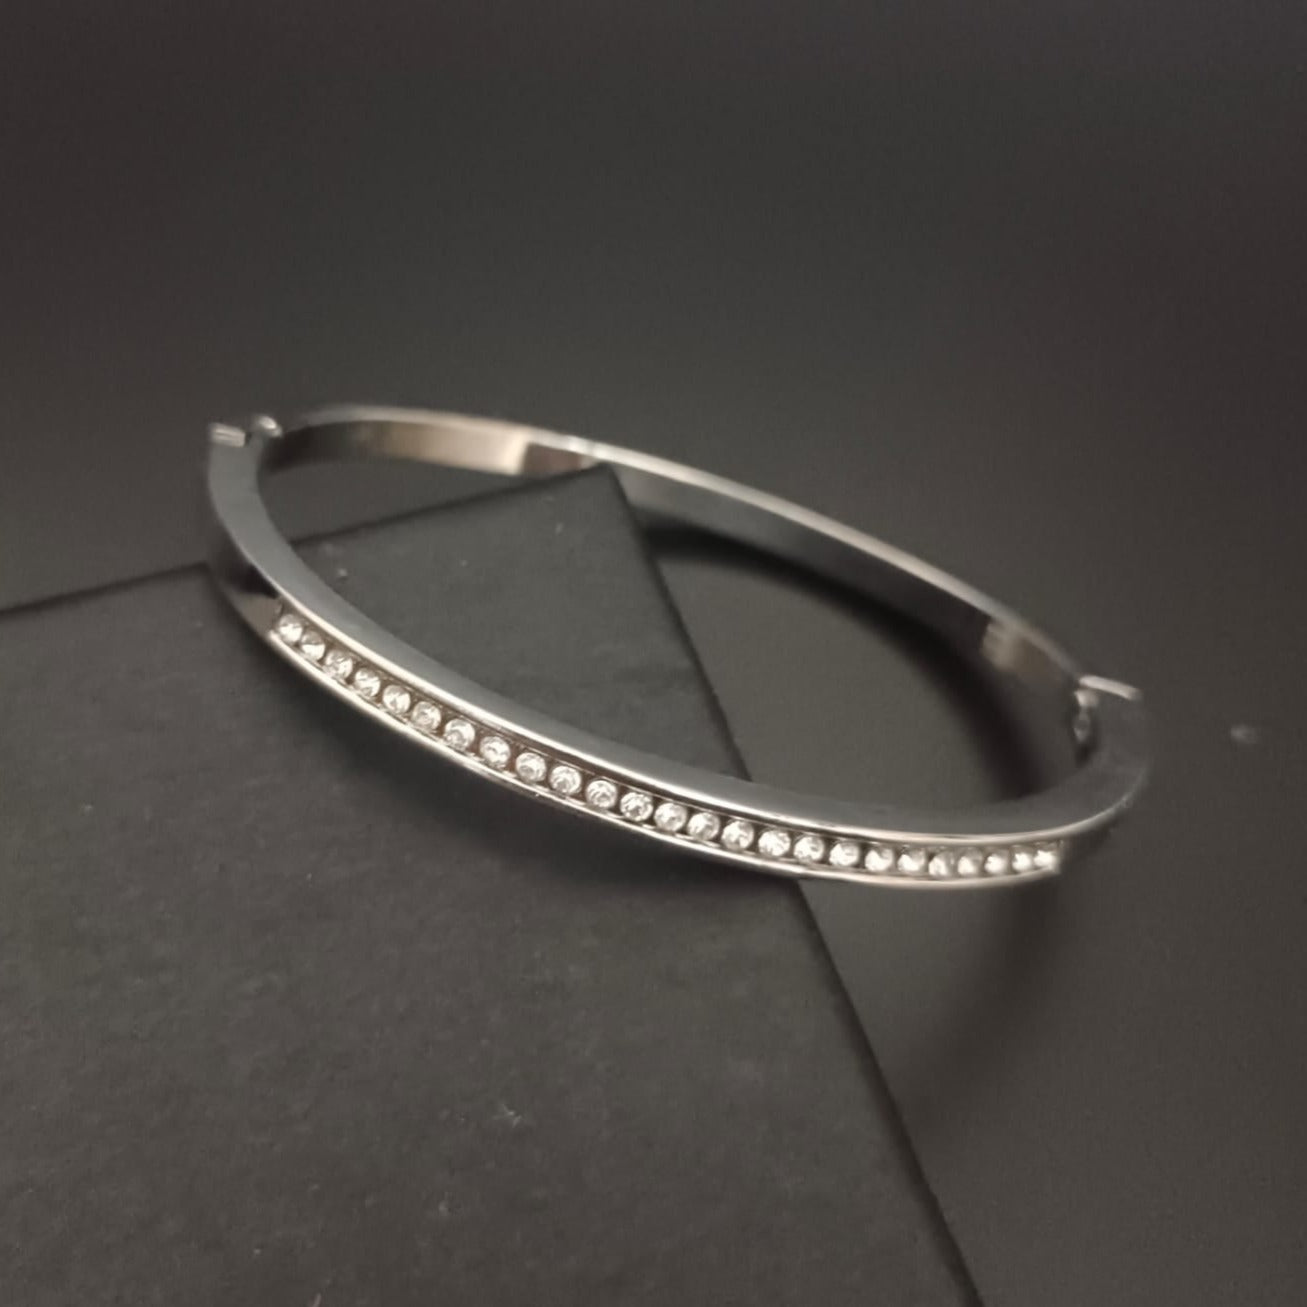 New Diamond Silver Bangle Design Kada Bracelet For Women